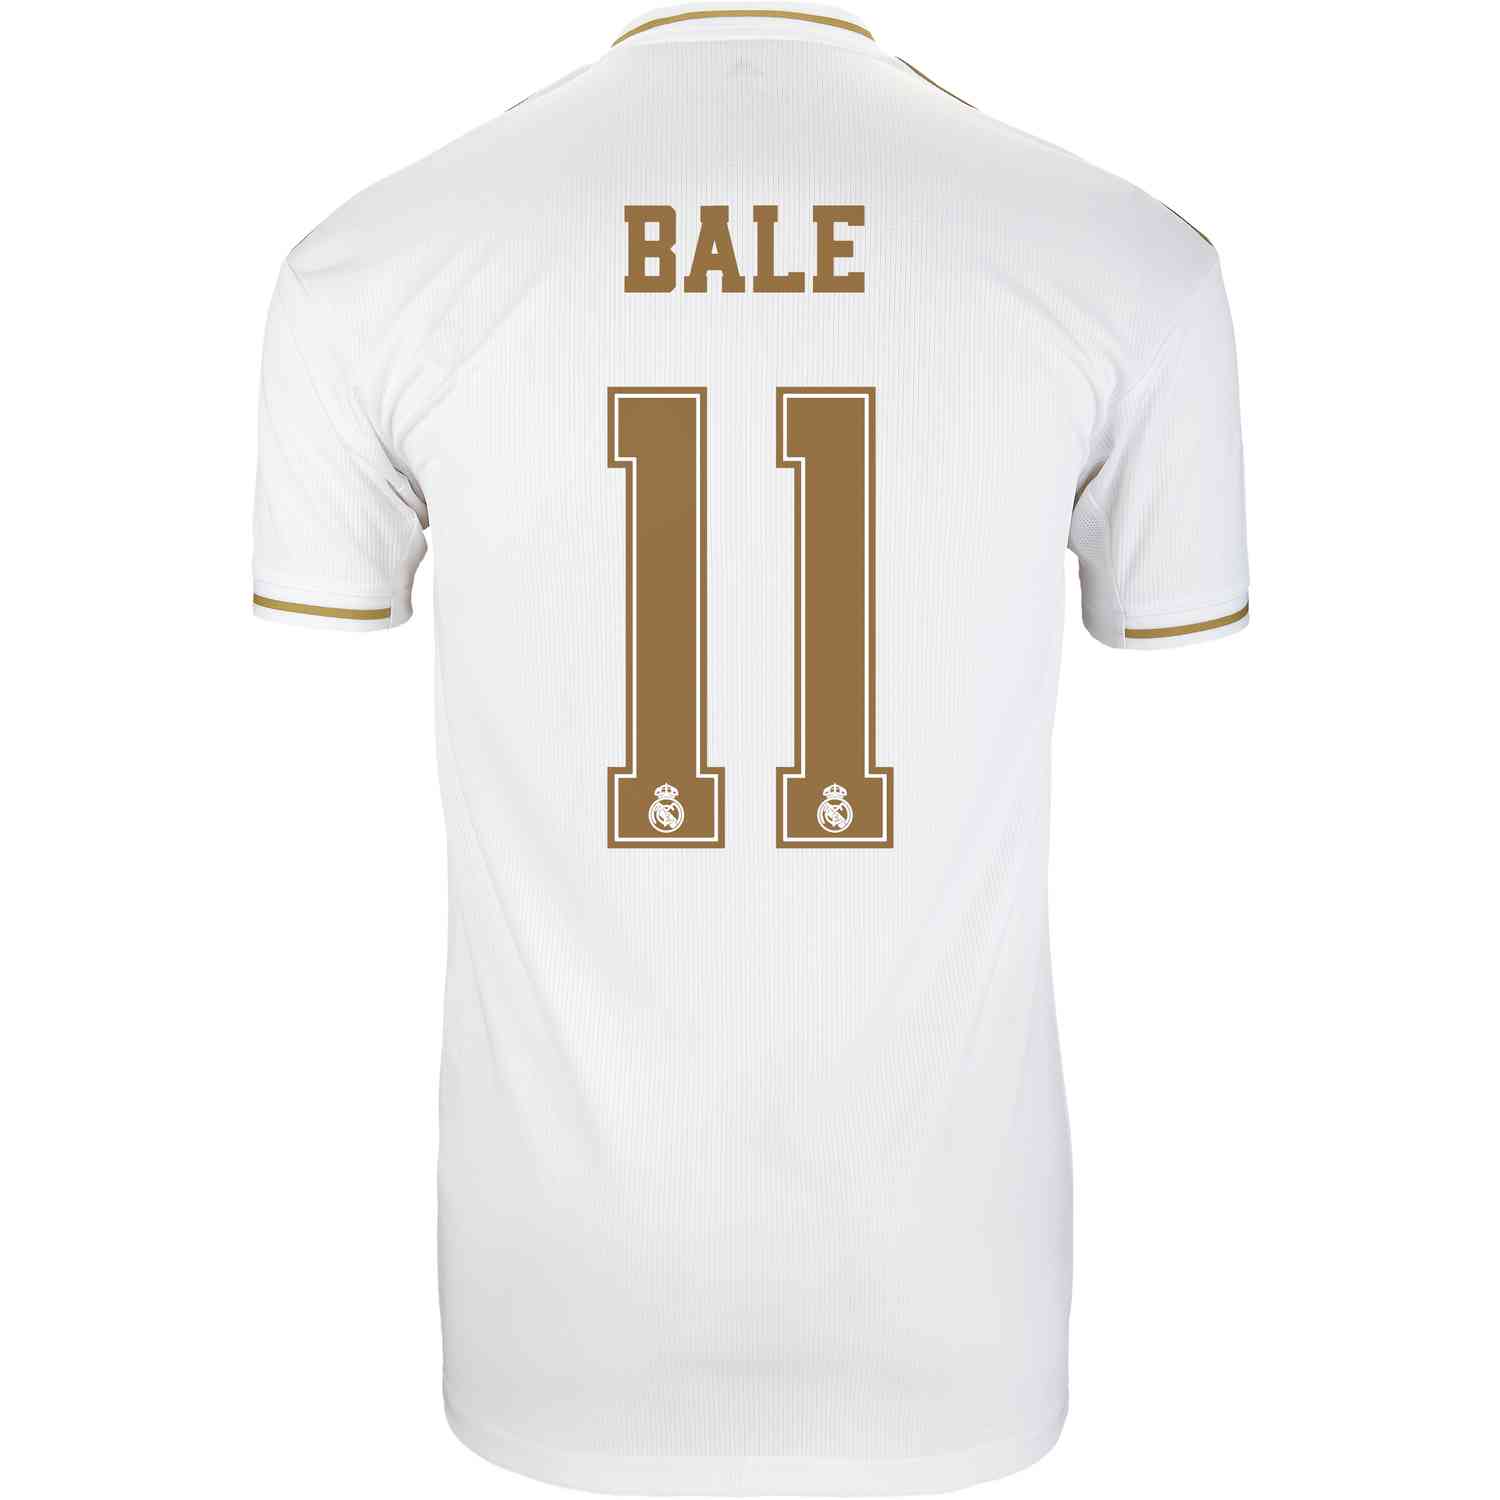 2019/20 Kids adidas Gareth Bale Real 